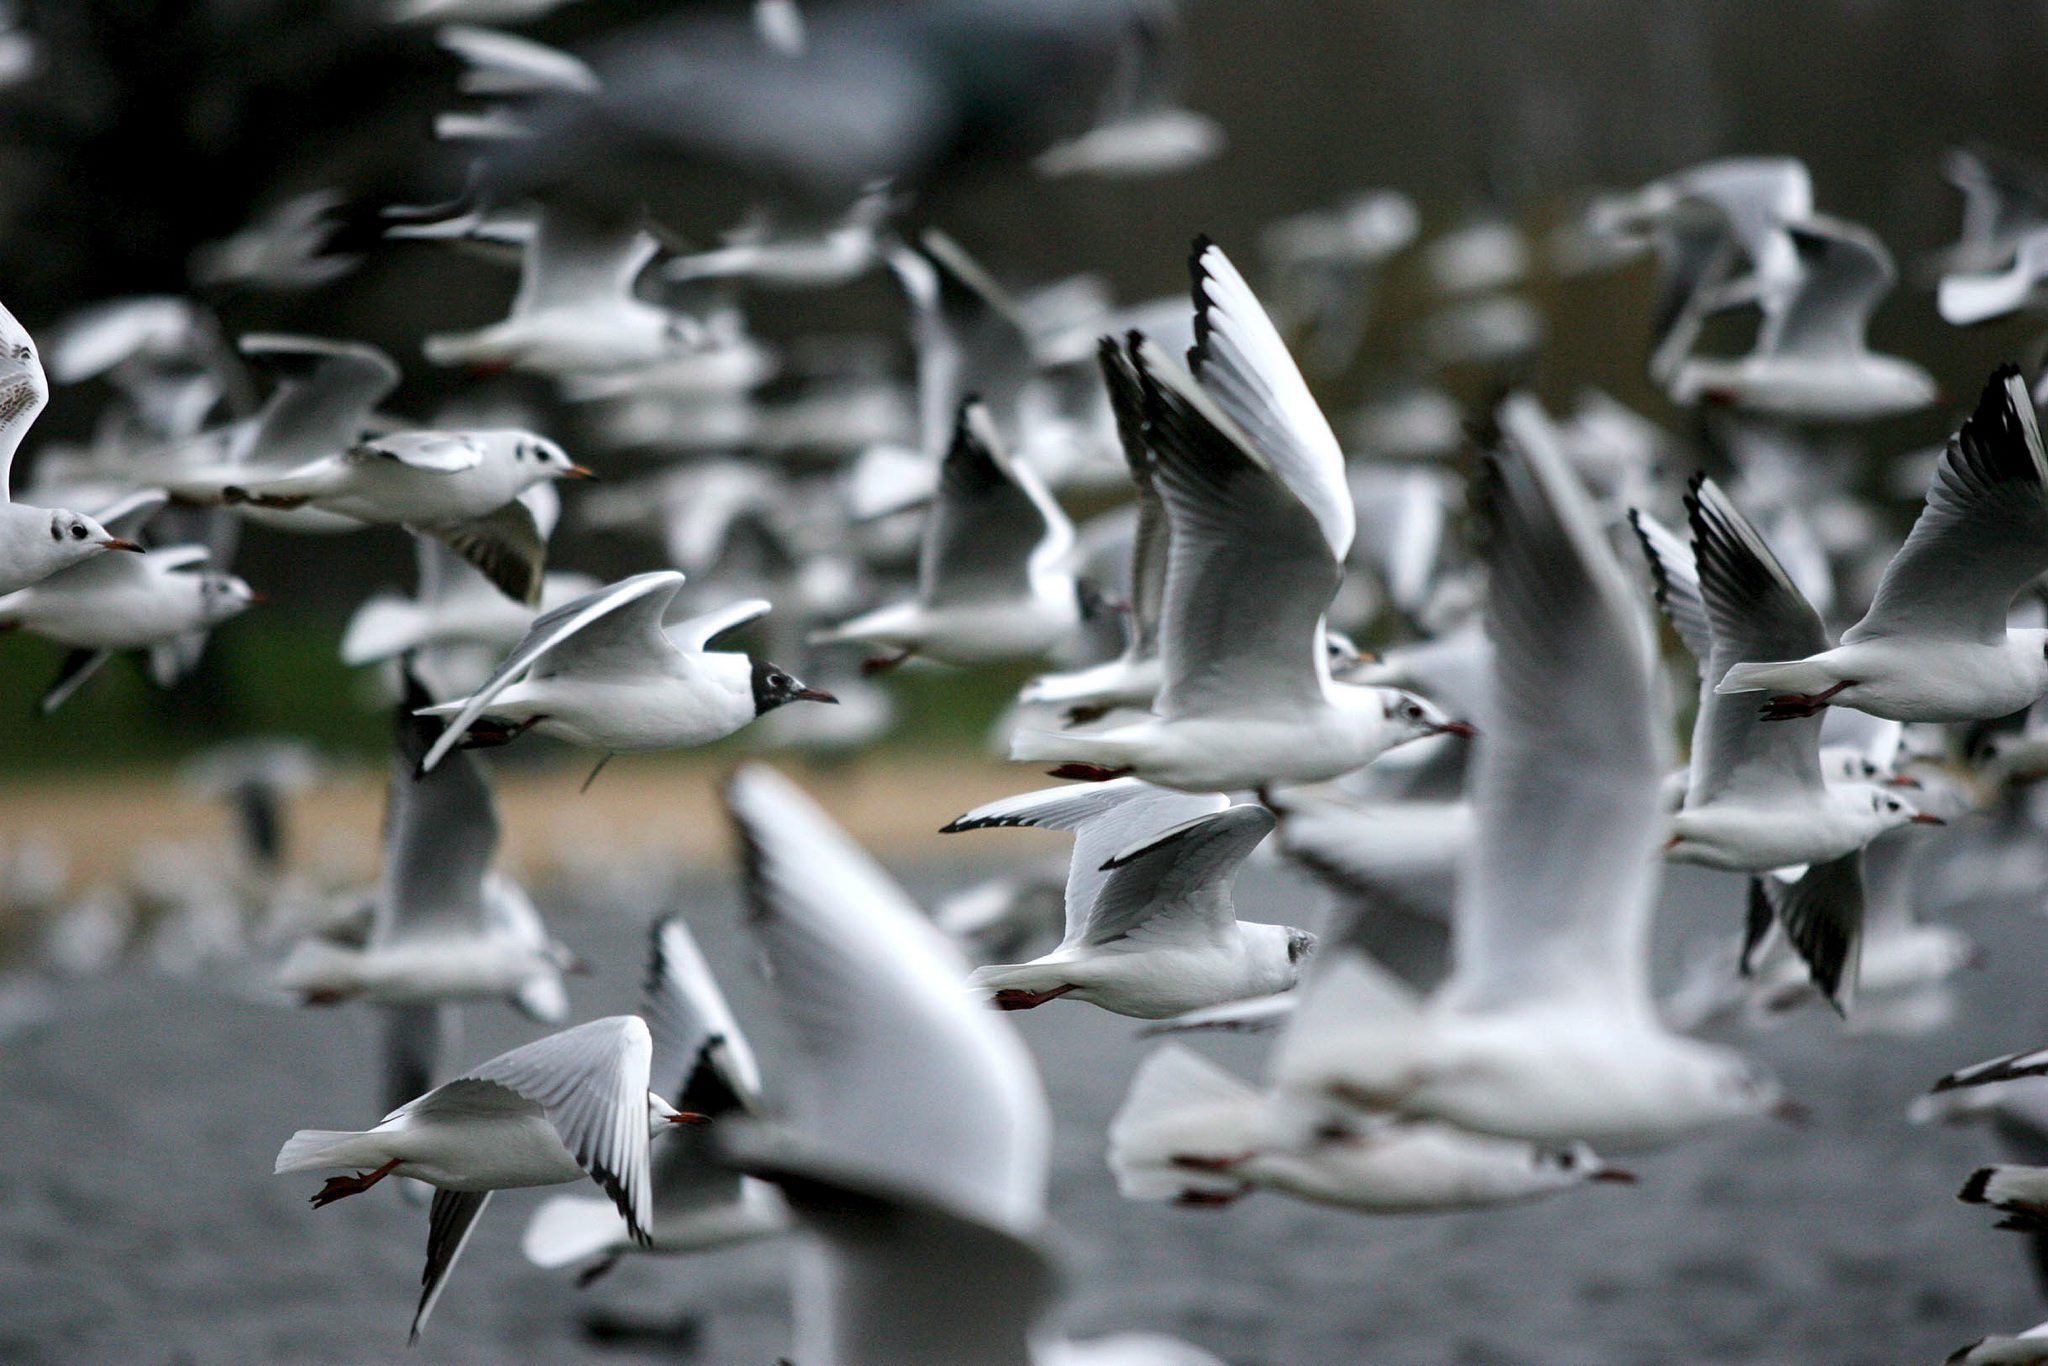 Εκατοντάδες πουλιά καλυμμένα με κολλώδες υλικό εντοπίστηκαν στη Βρετανία